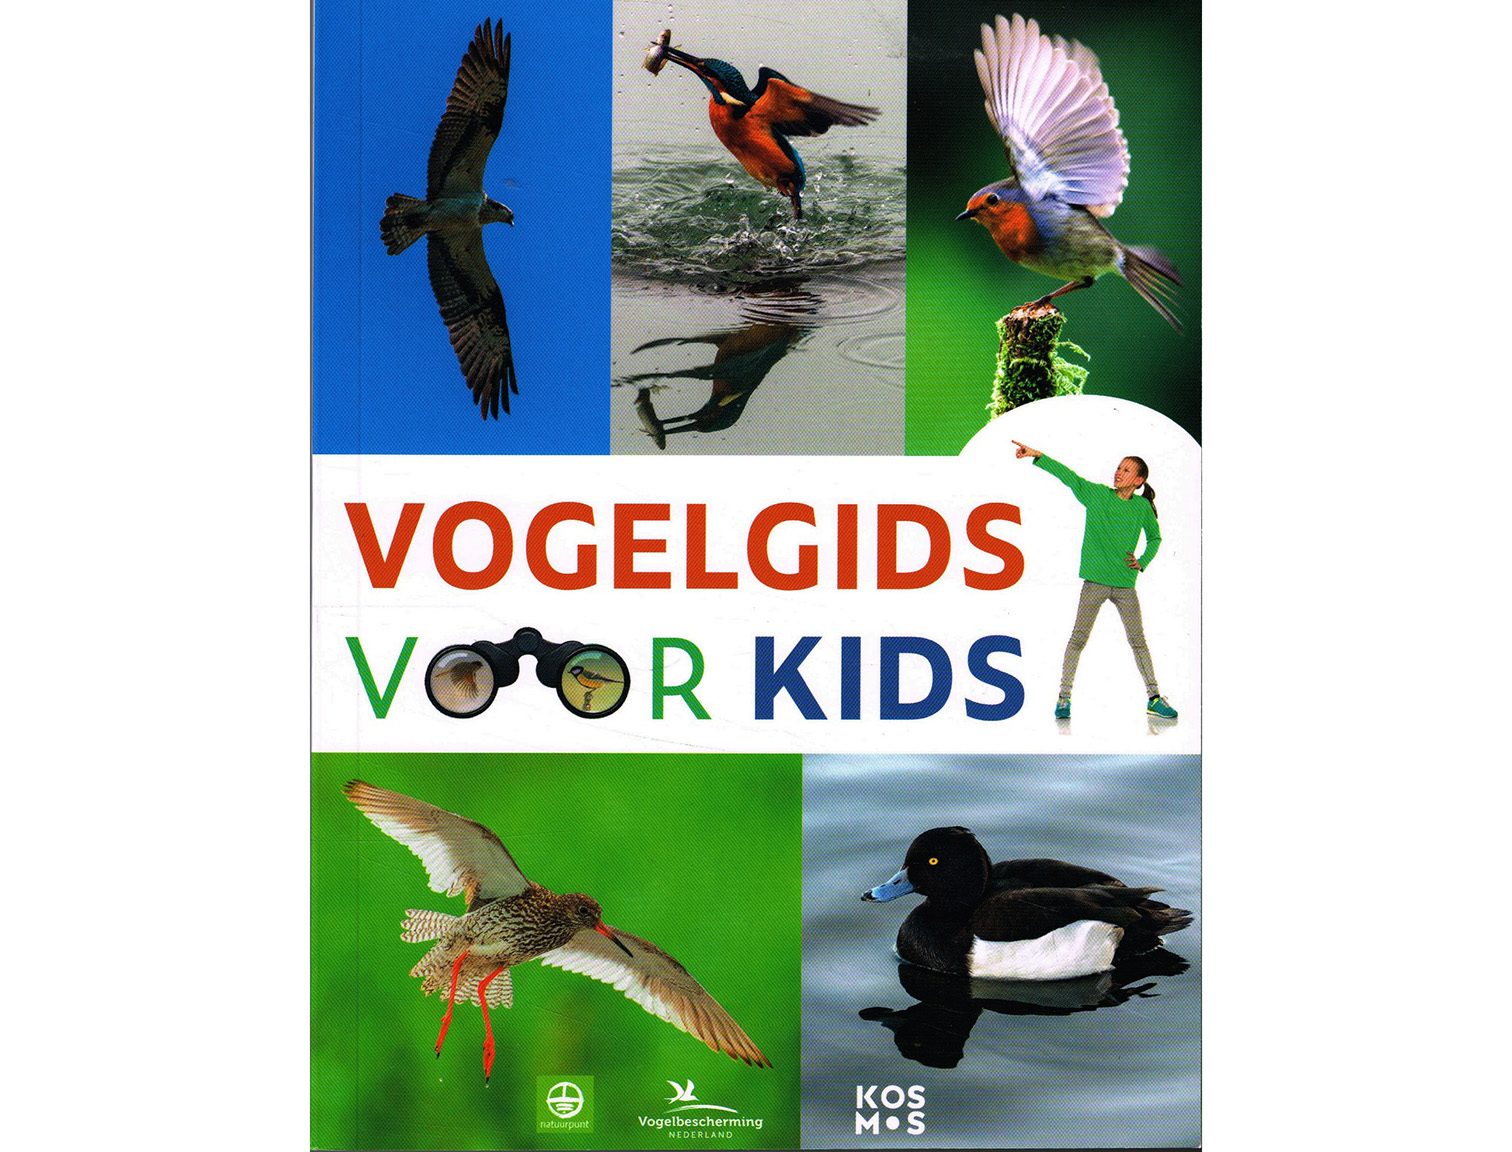 vogelgids voor kids